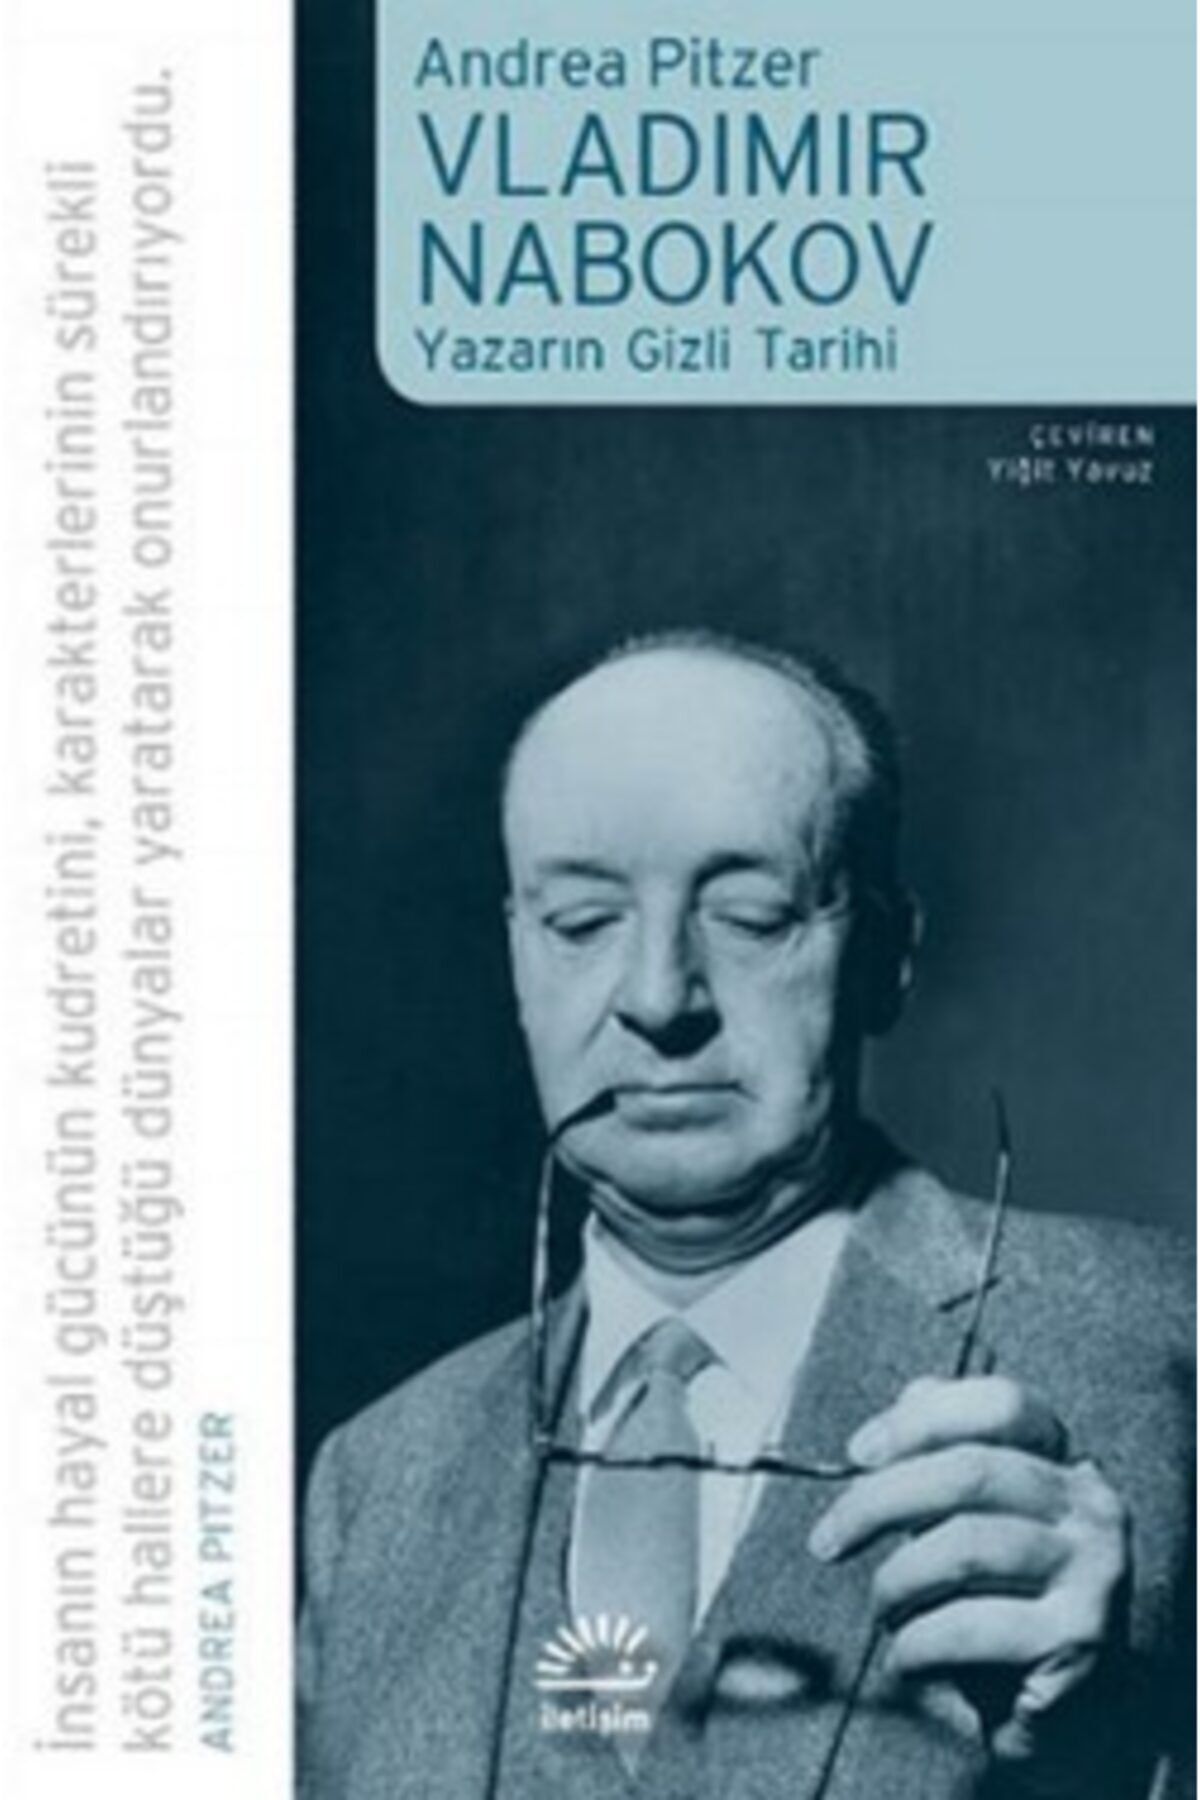 En Kitap Vladimir Nabokov Yazarın Gizli Tarihi